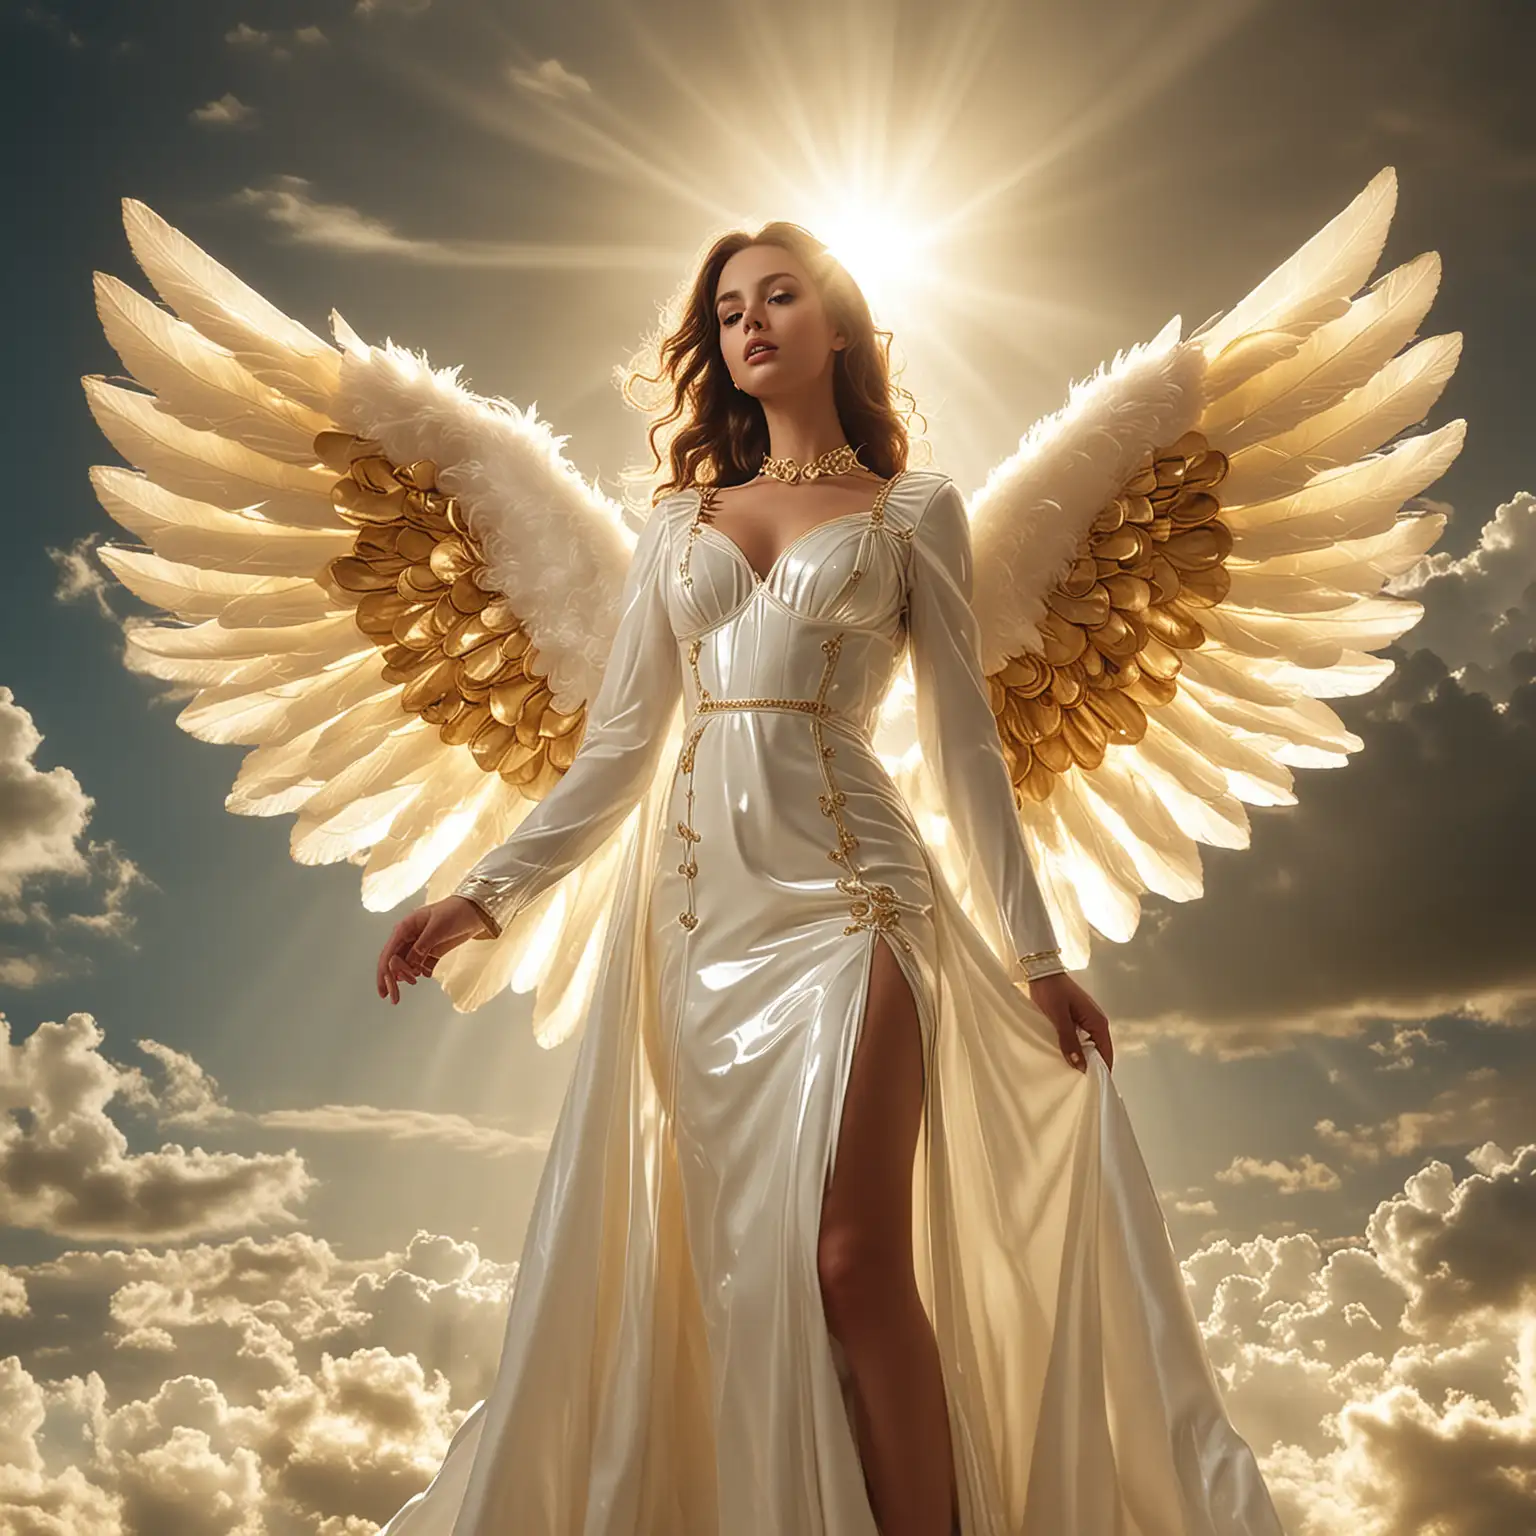 Himmlische Engel: Das Model trägt ein himmlisches Latexengelkleid in strahlendem Weiß mit goldenen Akzenten. Der Hintergrund ist eine wolkenverhangene Himmelsszene mit goldenem Sonnenlicht, das durch die Wolken bricht, und verbreitet eine friedliche und göttliche Stimmung.